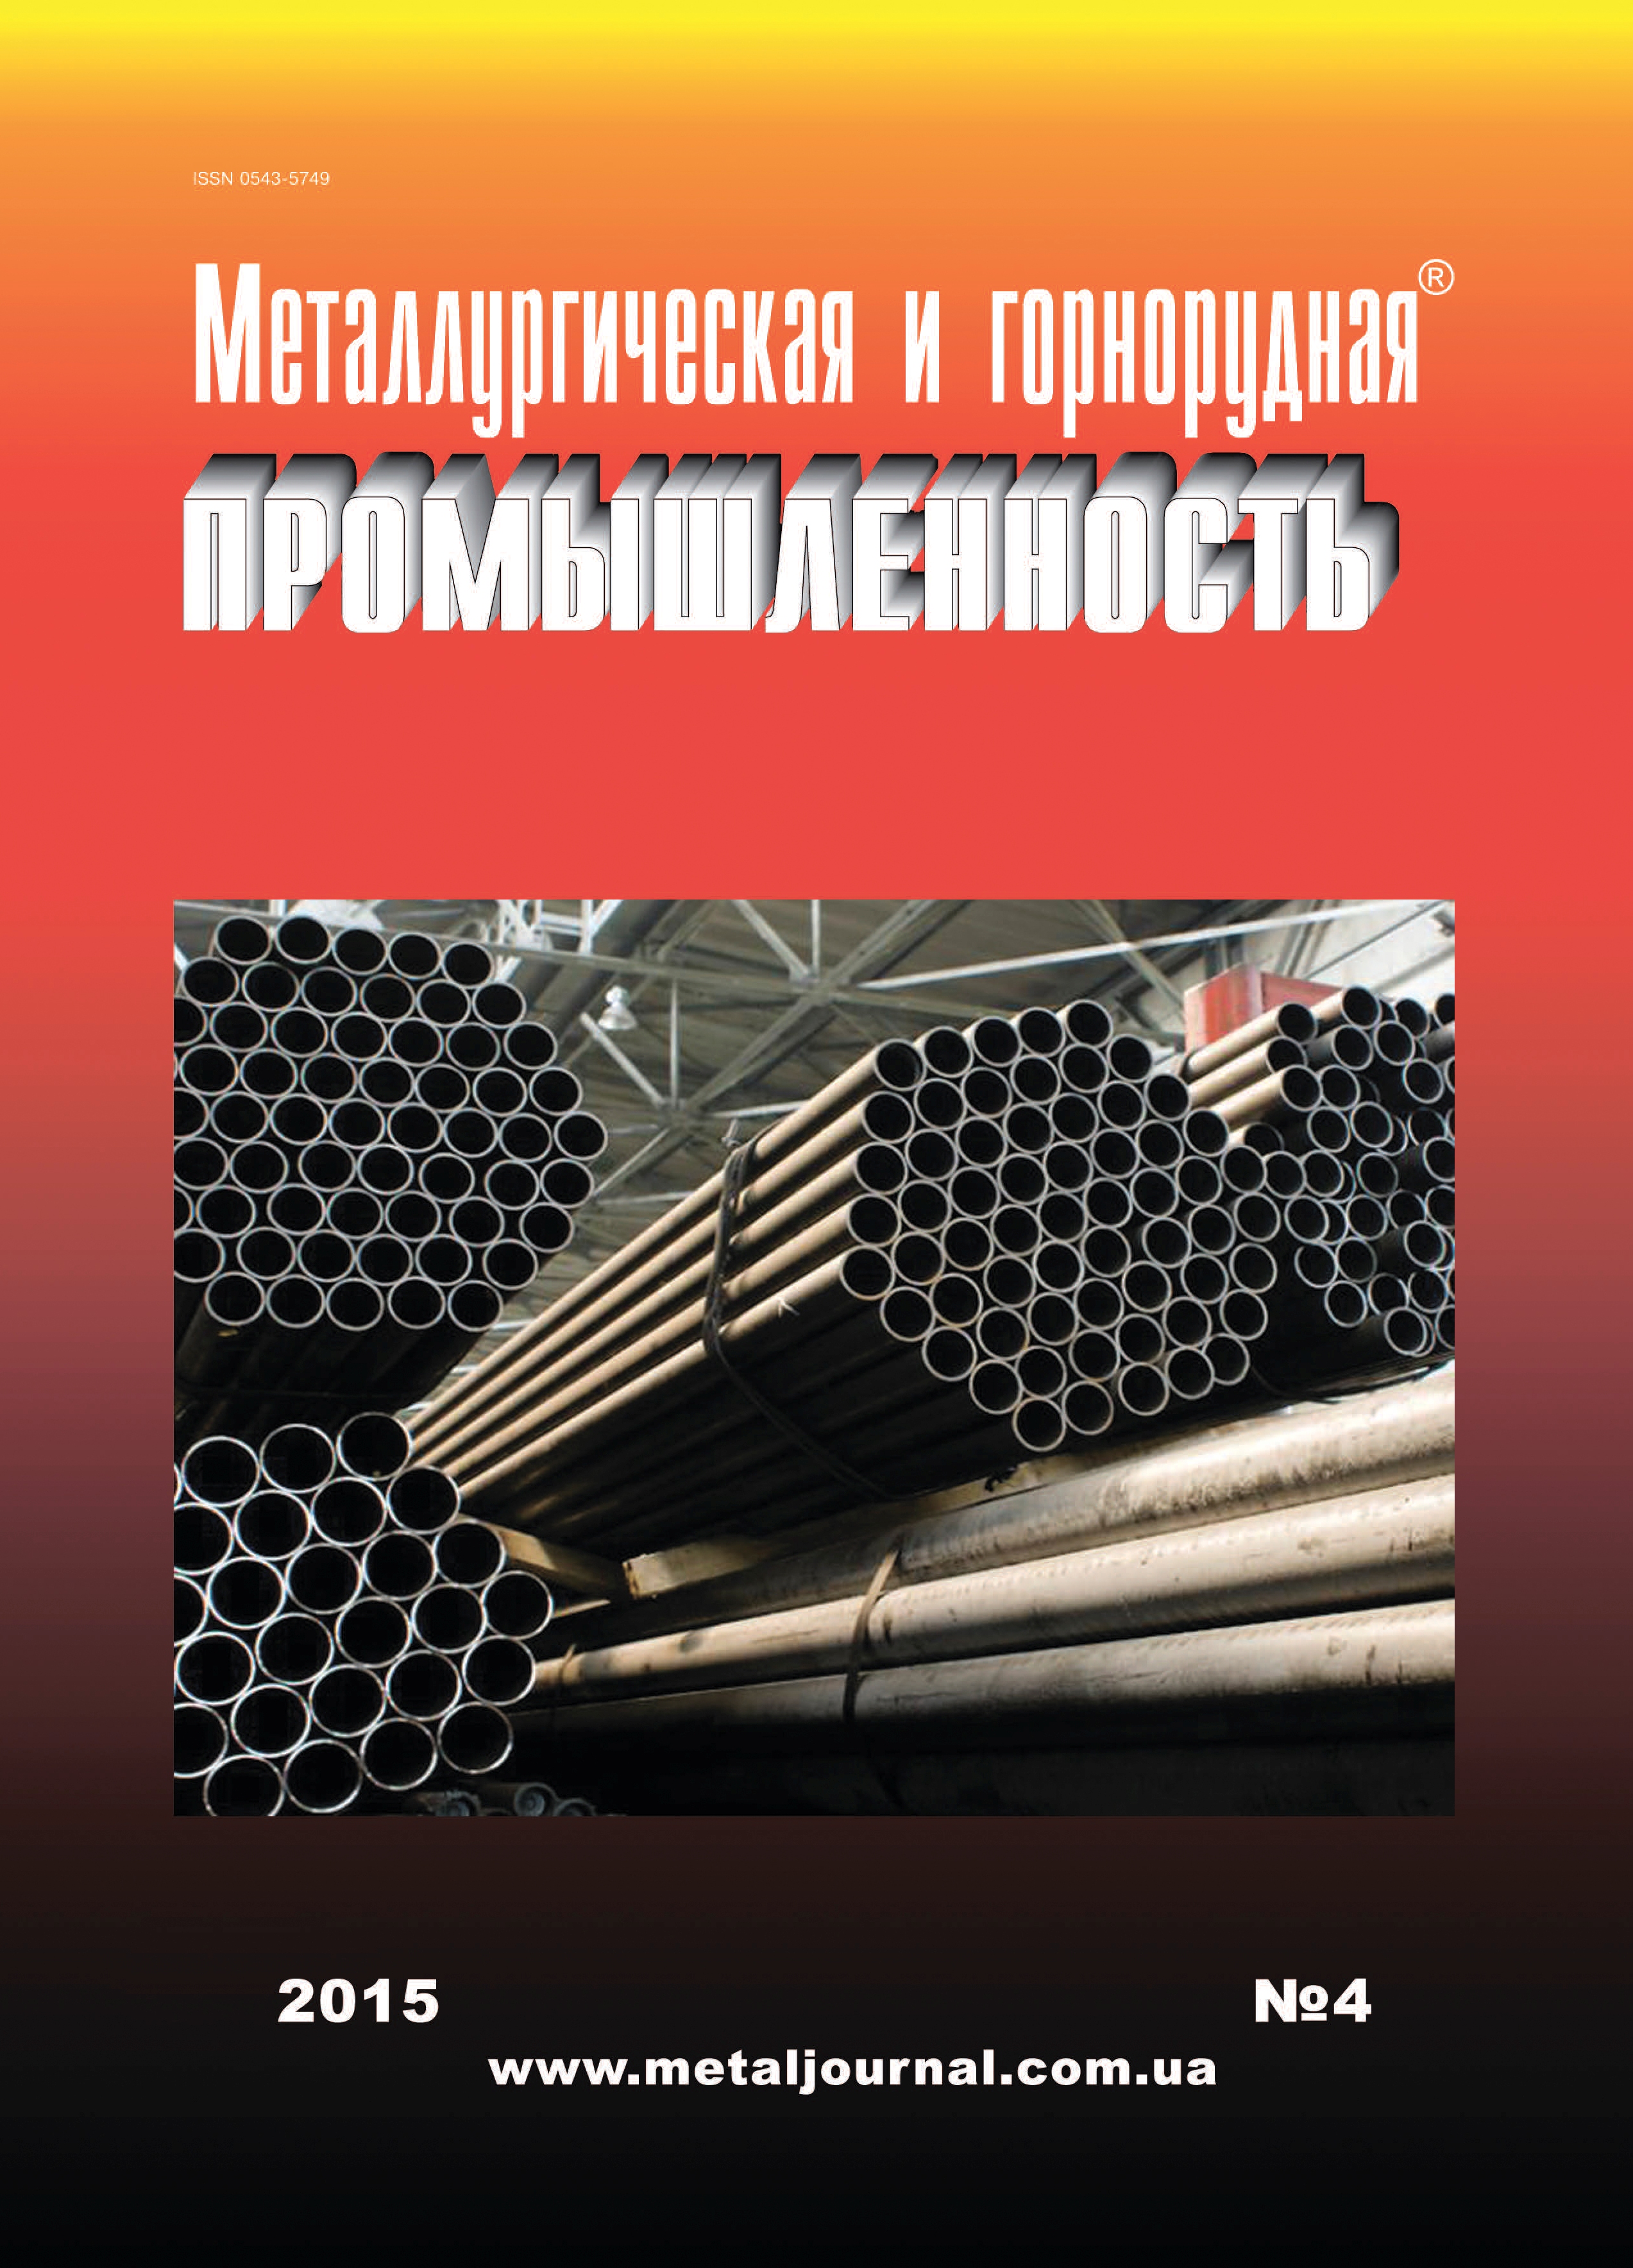 Металлургическая и горнорудная промышленность №4 (295) 2015 г. image